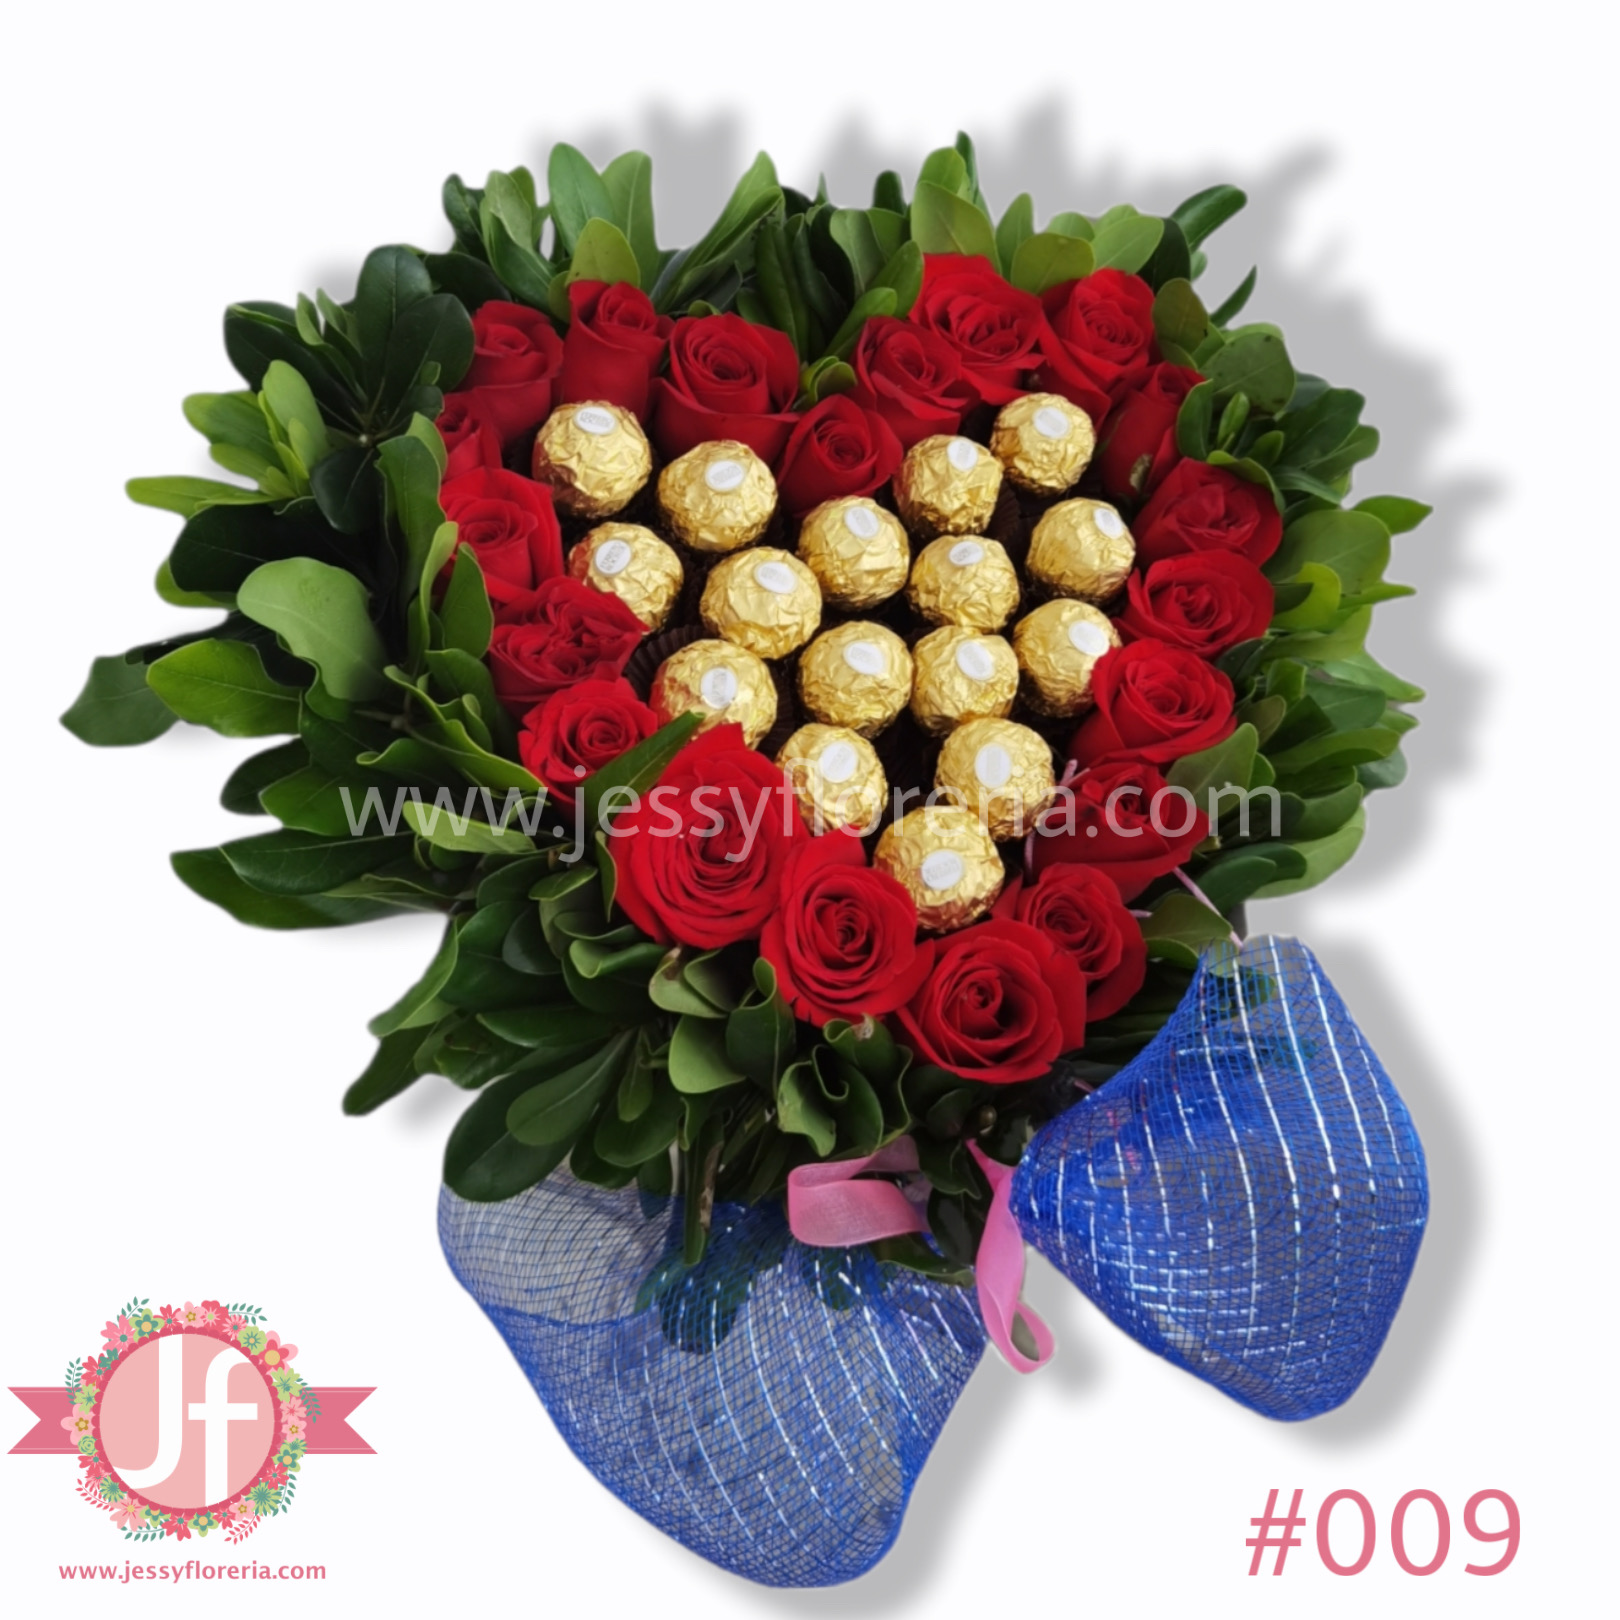 Caja en forma de corazón con 30 rosas y 25 chocolates Ferrero